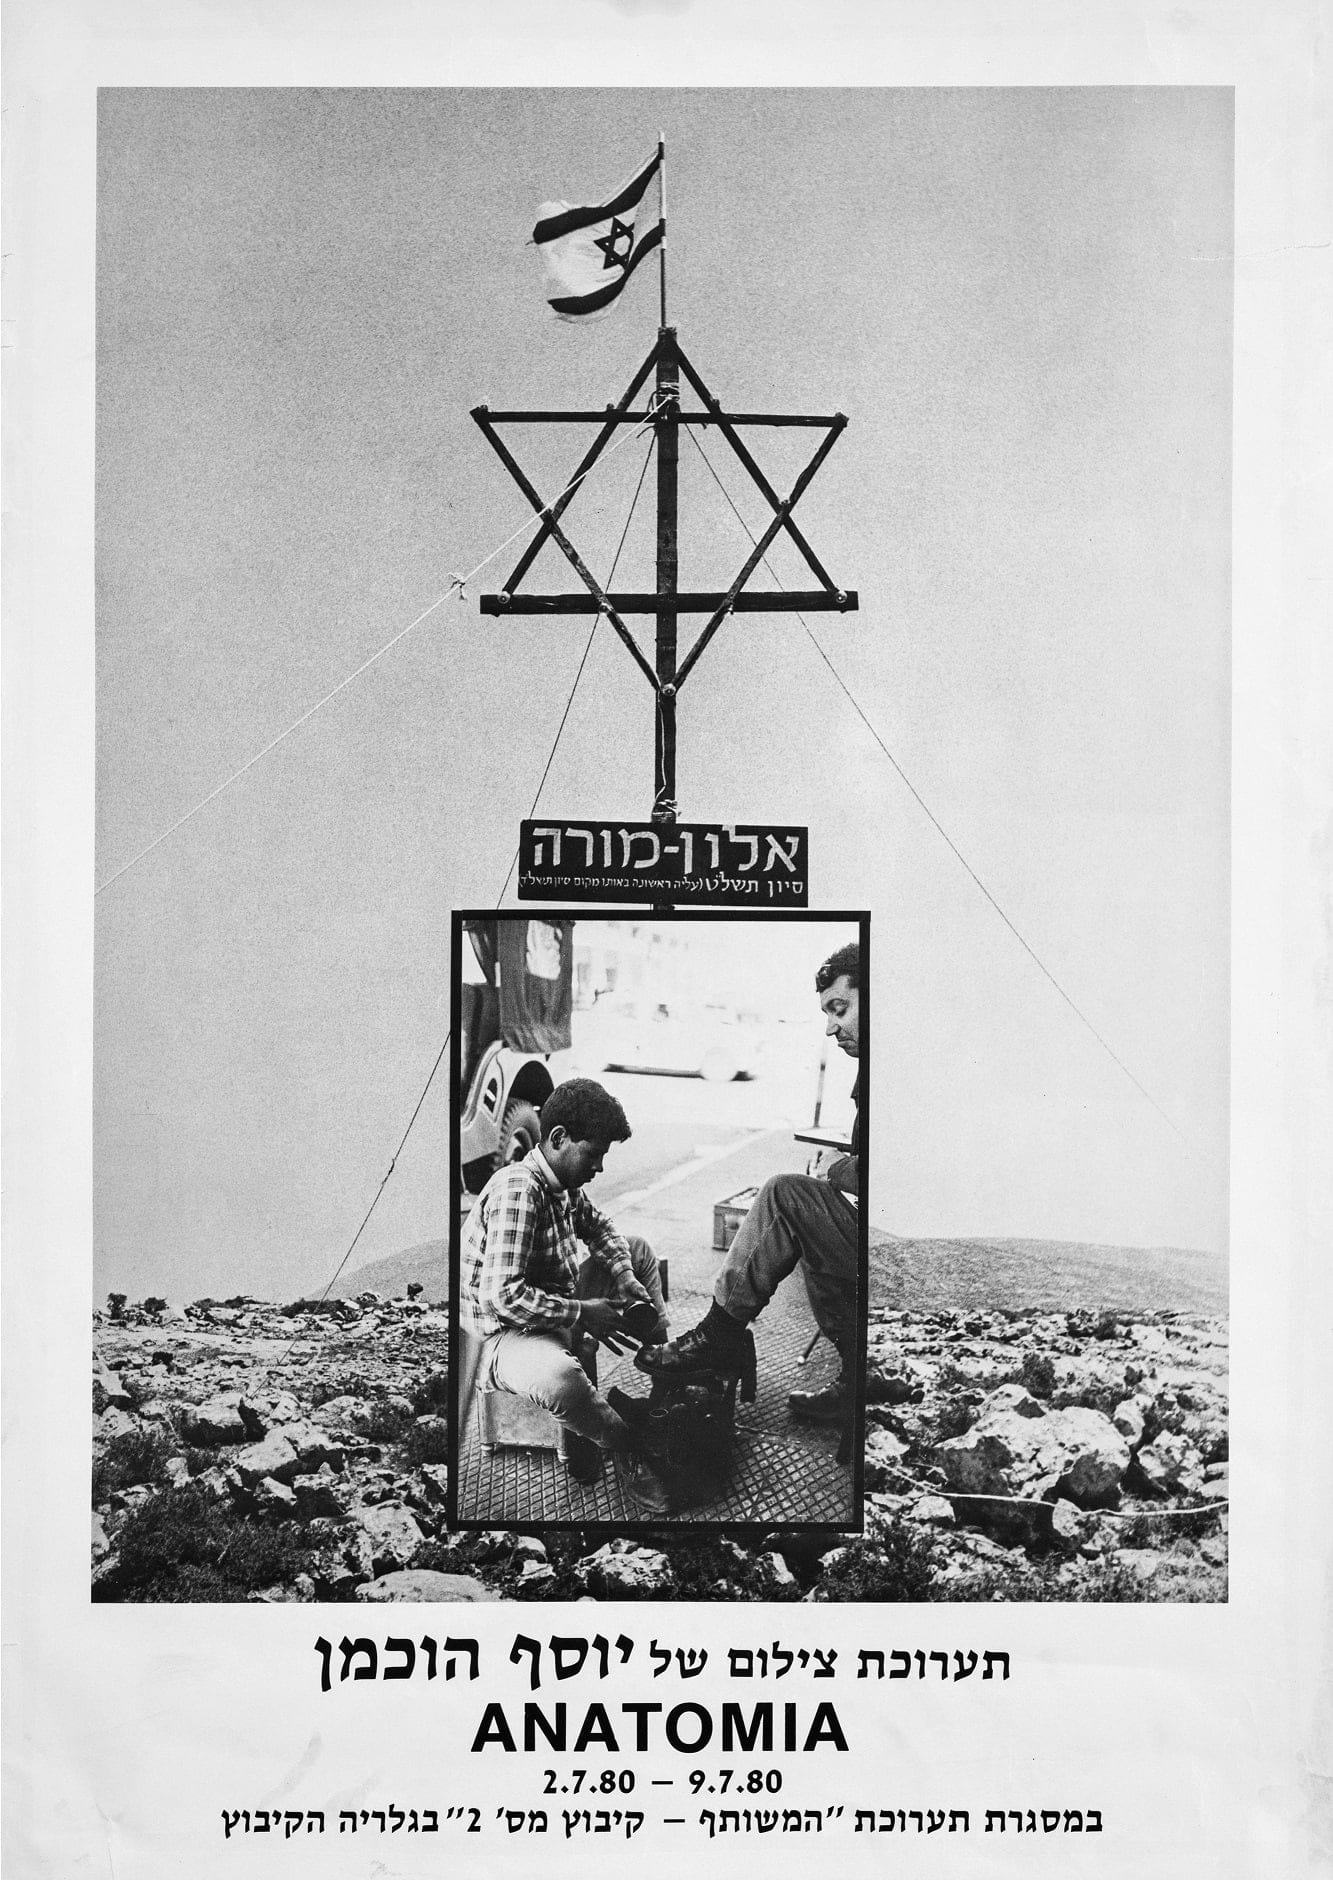 יוסף הוכמן, אנטומיה, כרזה לתערוכה, יולי 1980 (צילום: רן ארדה)